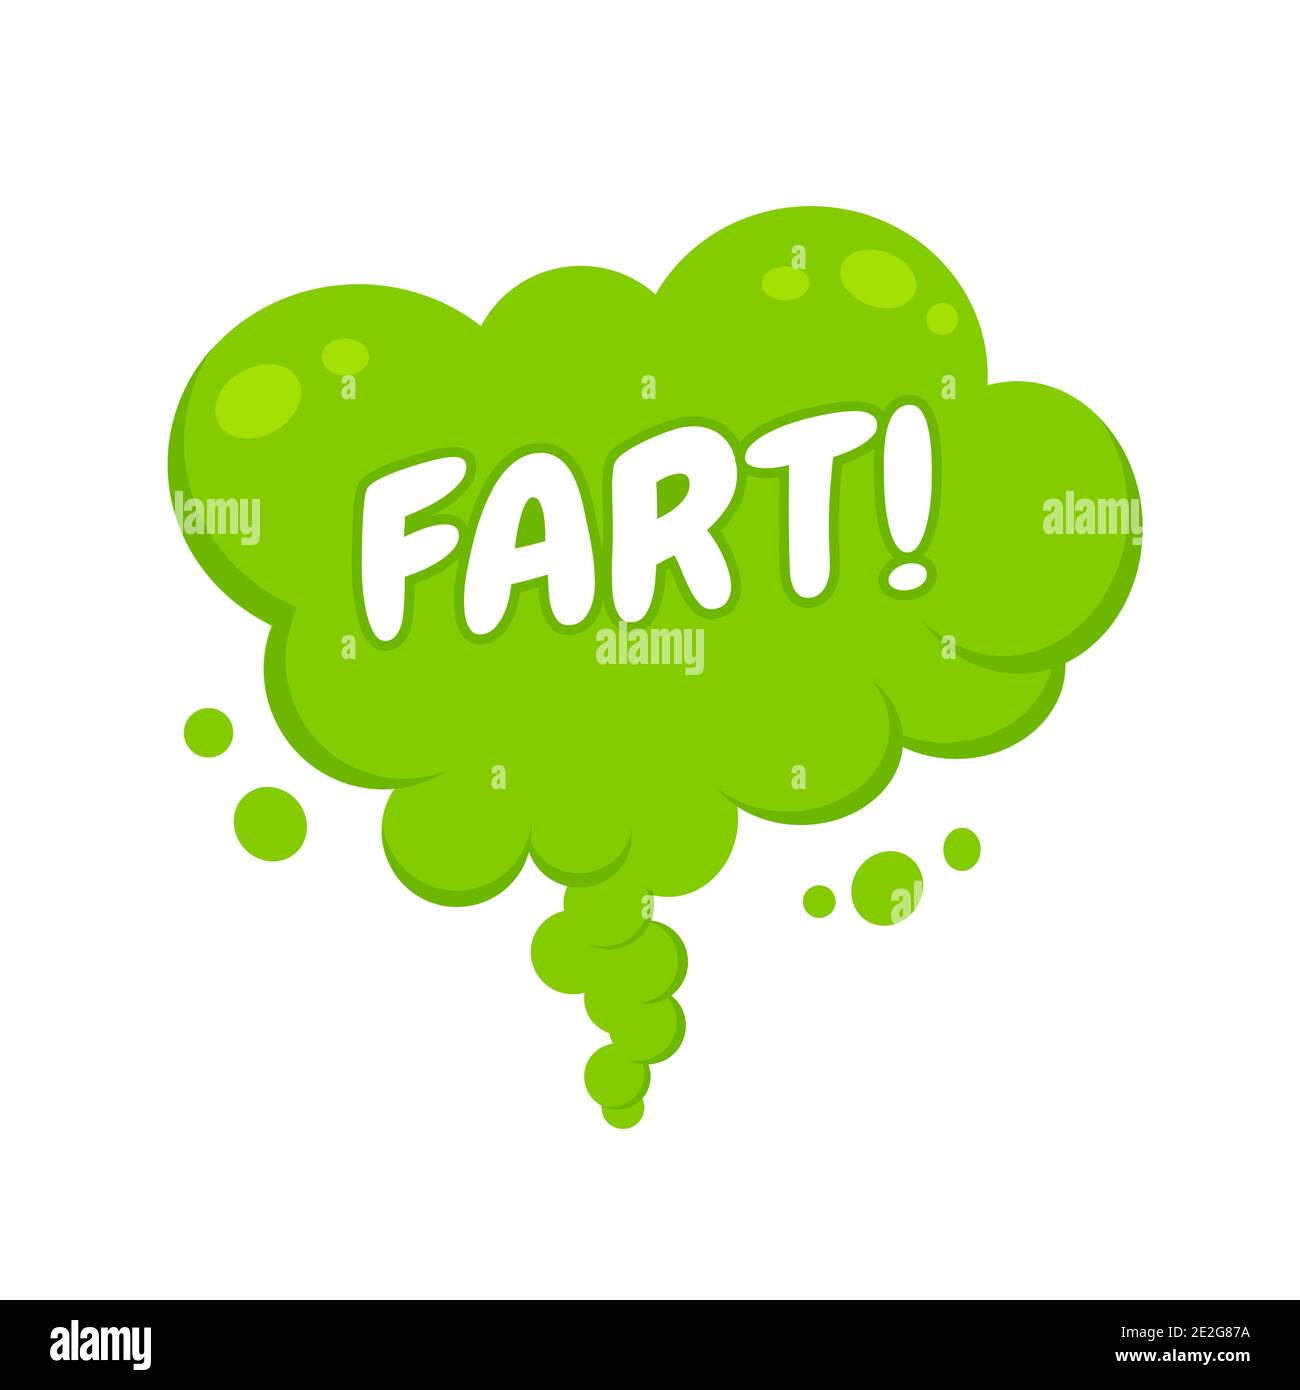 Olling verde dibujos animados fart nube de estilo plano diseño ilustración vectorial con texto fart. Mal olor o olor tóxico caricatura humo nube aislada sobre blanco Ilustración del Vector